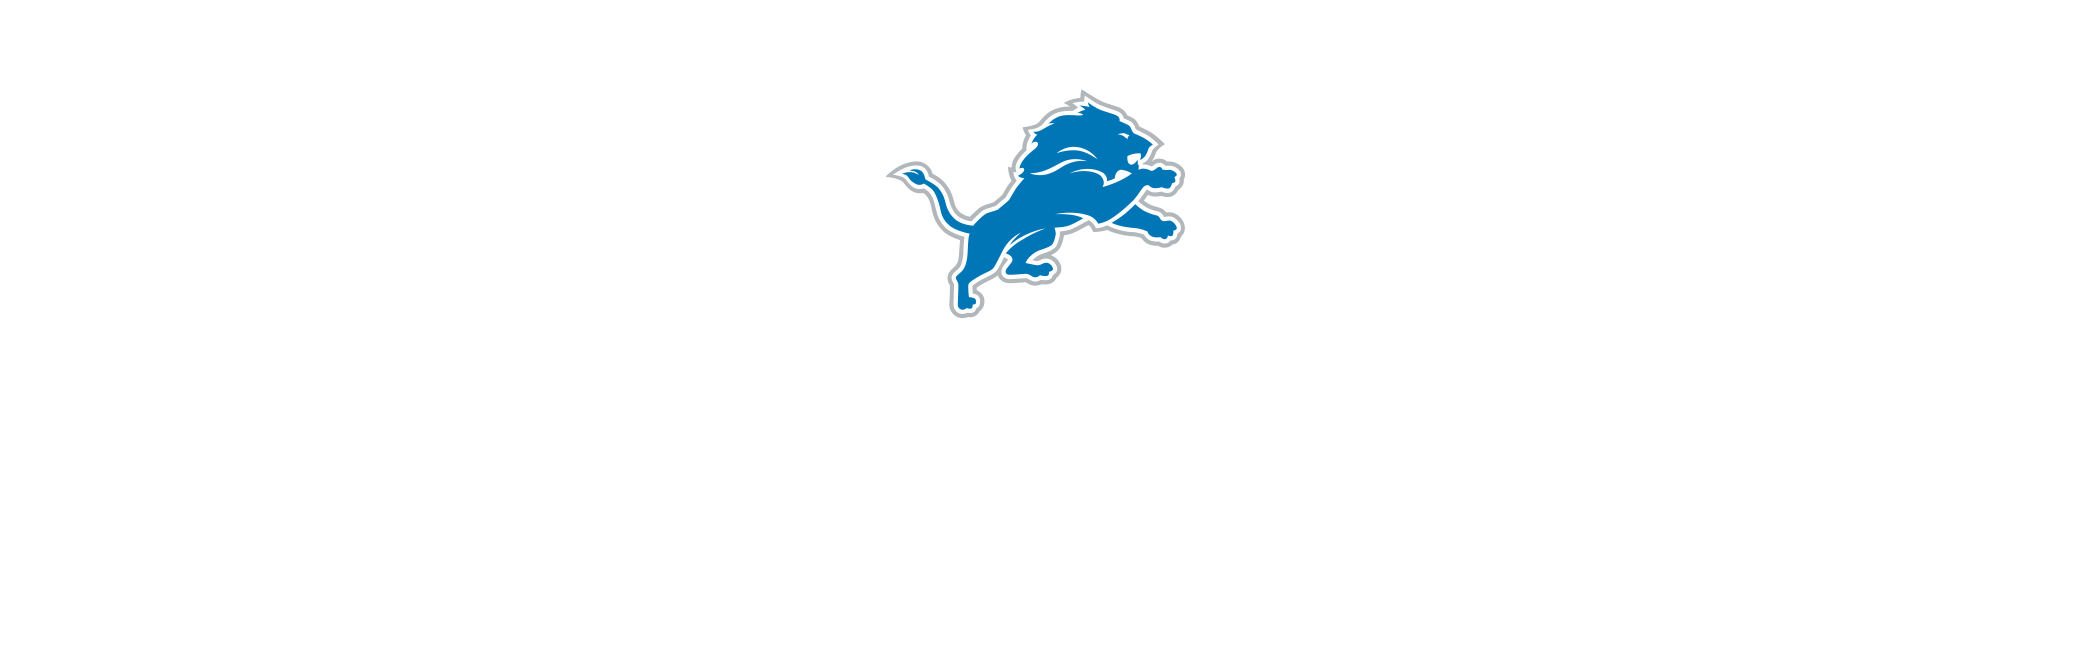 Detroit Lions, McDonald's partner for new game-day deal, Lions bundle box